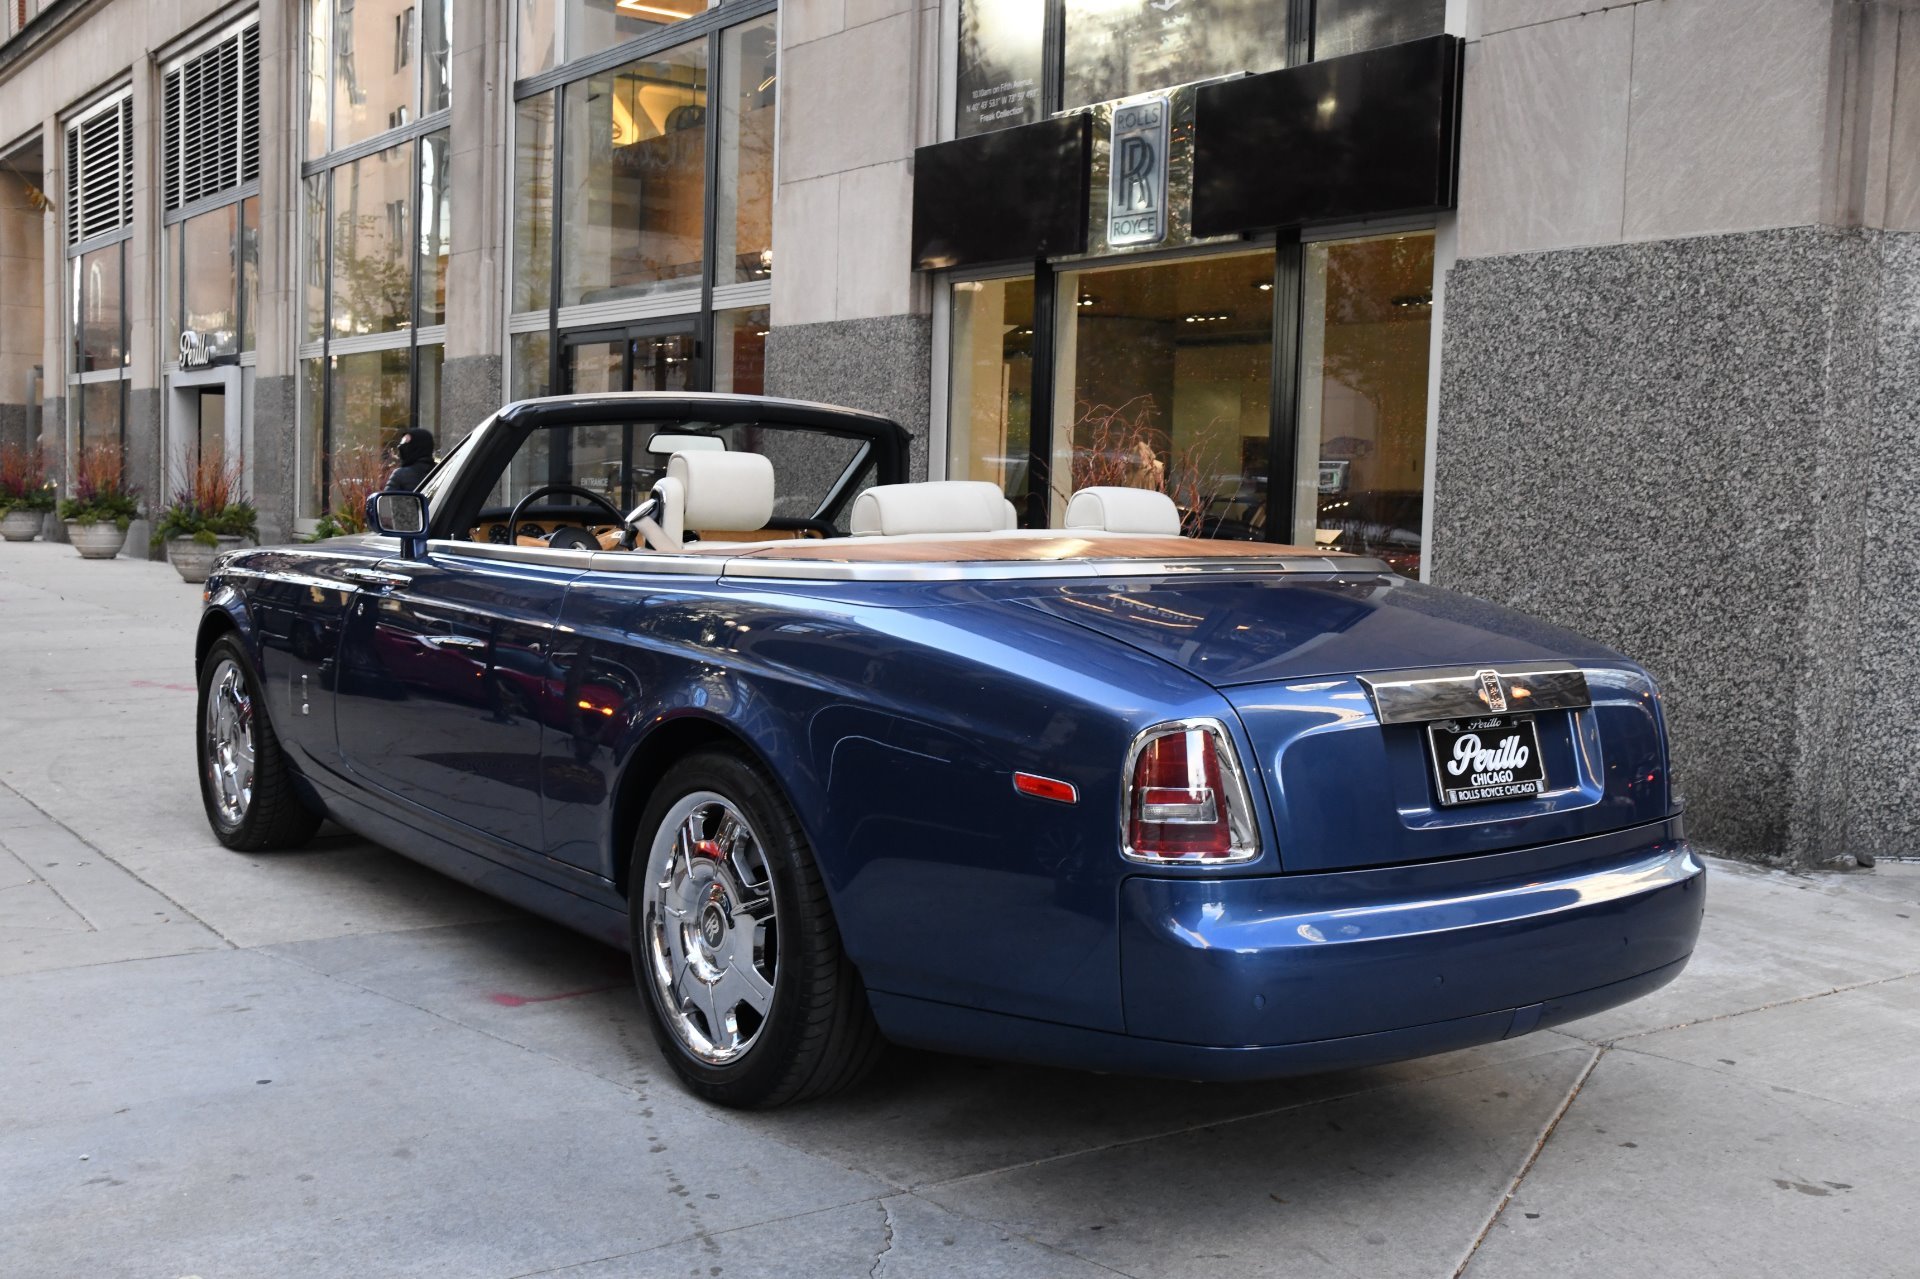 Роллс купе. Rolls Royce Phantom Drophead. Rolls Royce Phantom Coupe кабриолет. Rolls Royce Drophead Coupe. Роллс Ройс Phantom Drophead Coupe.